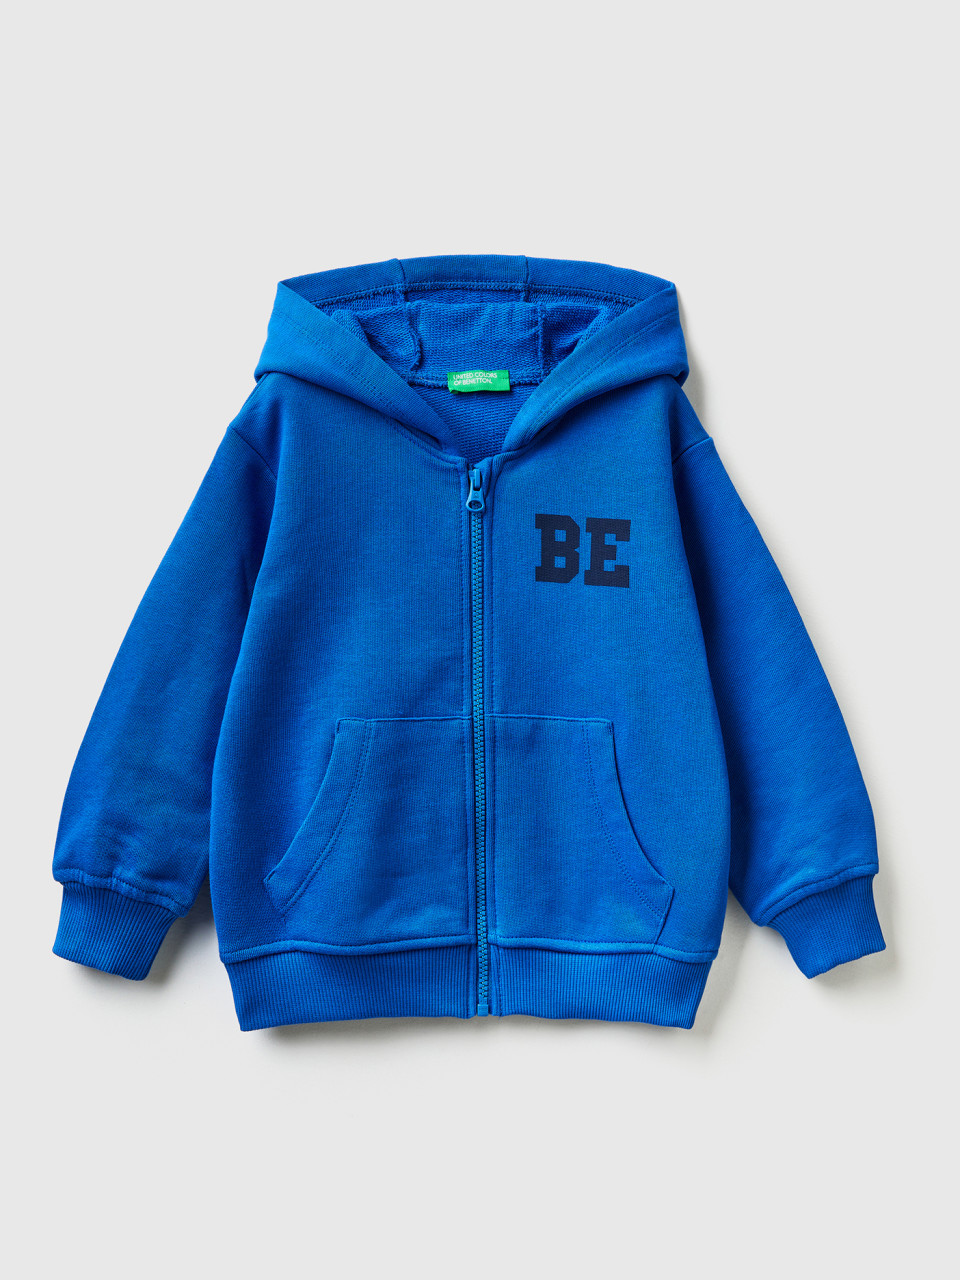 Benetton, Sweatshirt Mit Logo Und Kapuze, Verkehrsblau, female